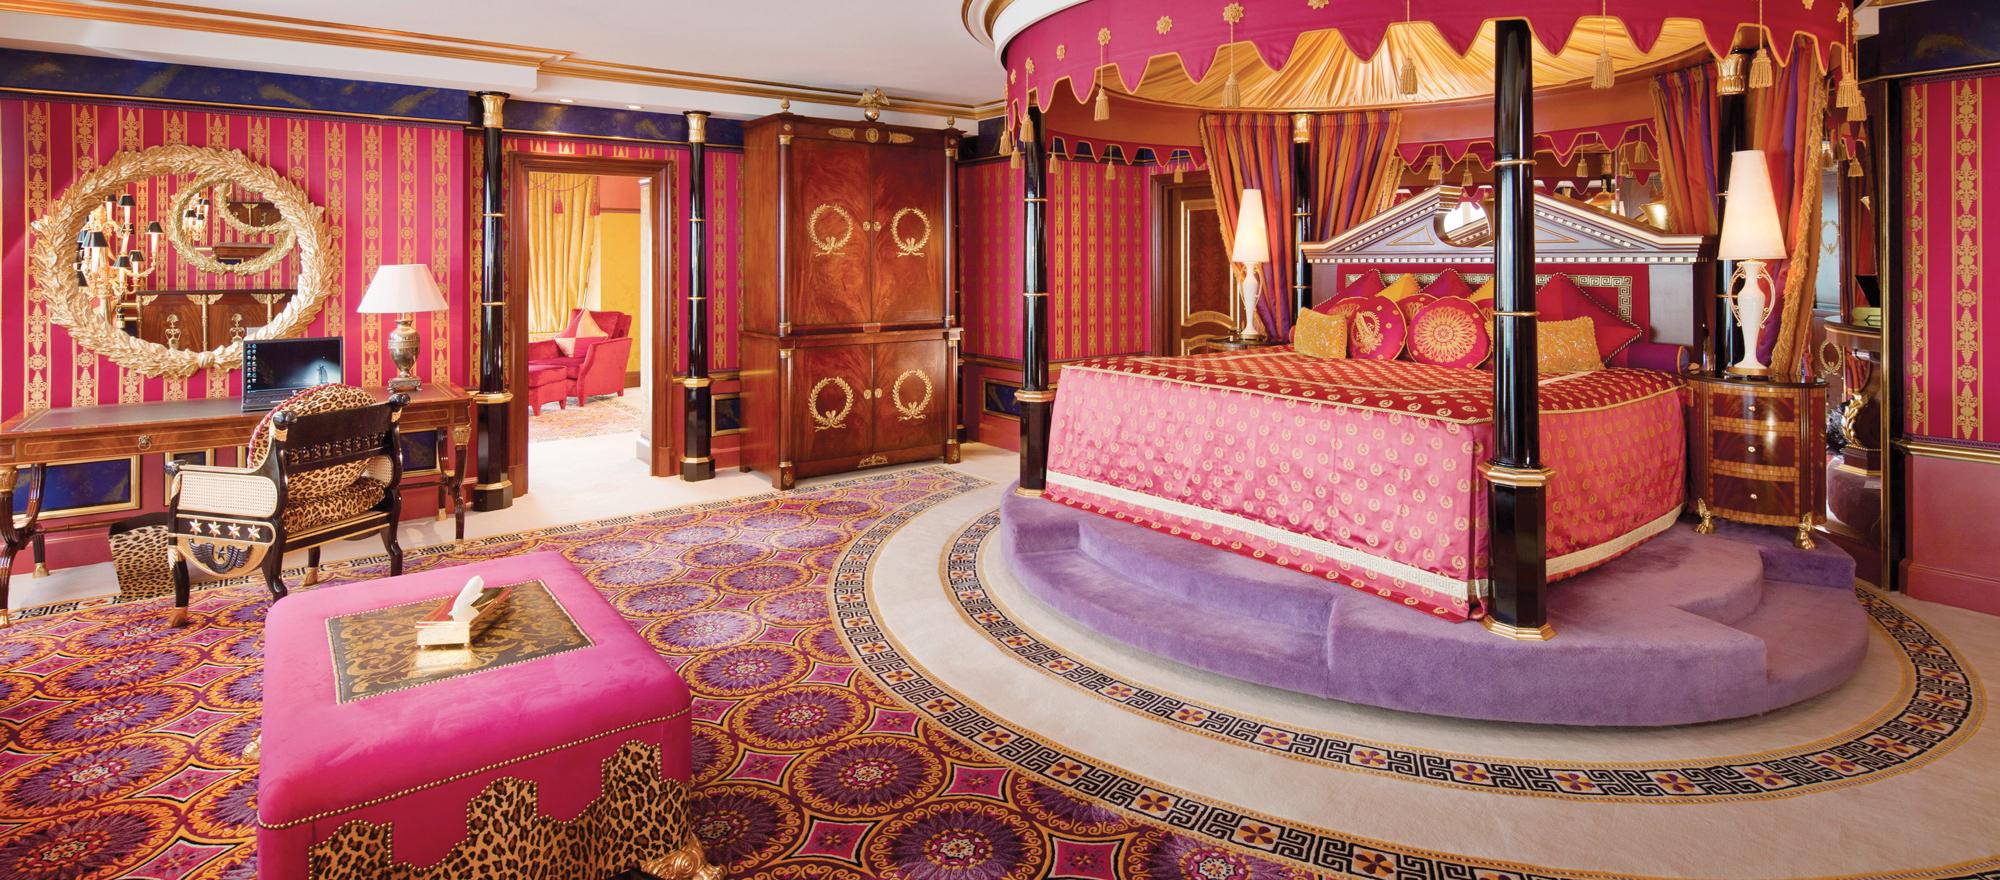 A suite at Dubai's Burg-Al-Arab hotel might cost $24,000 a night. 